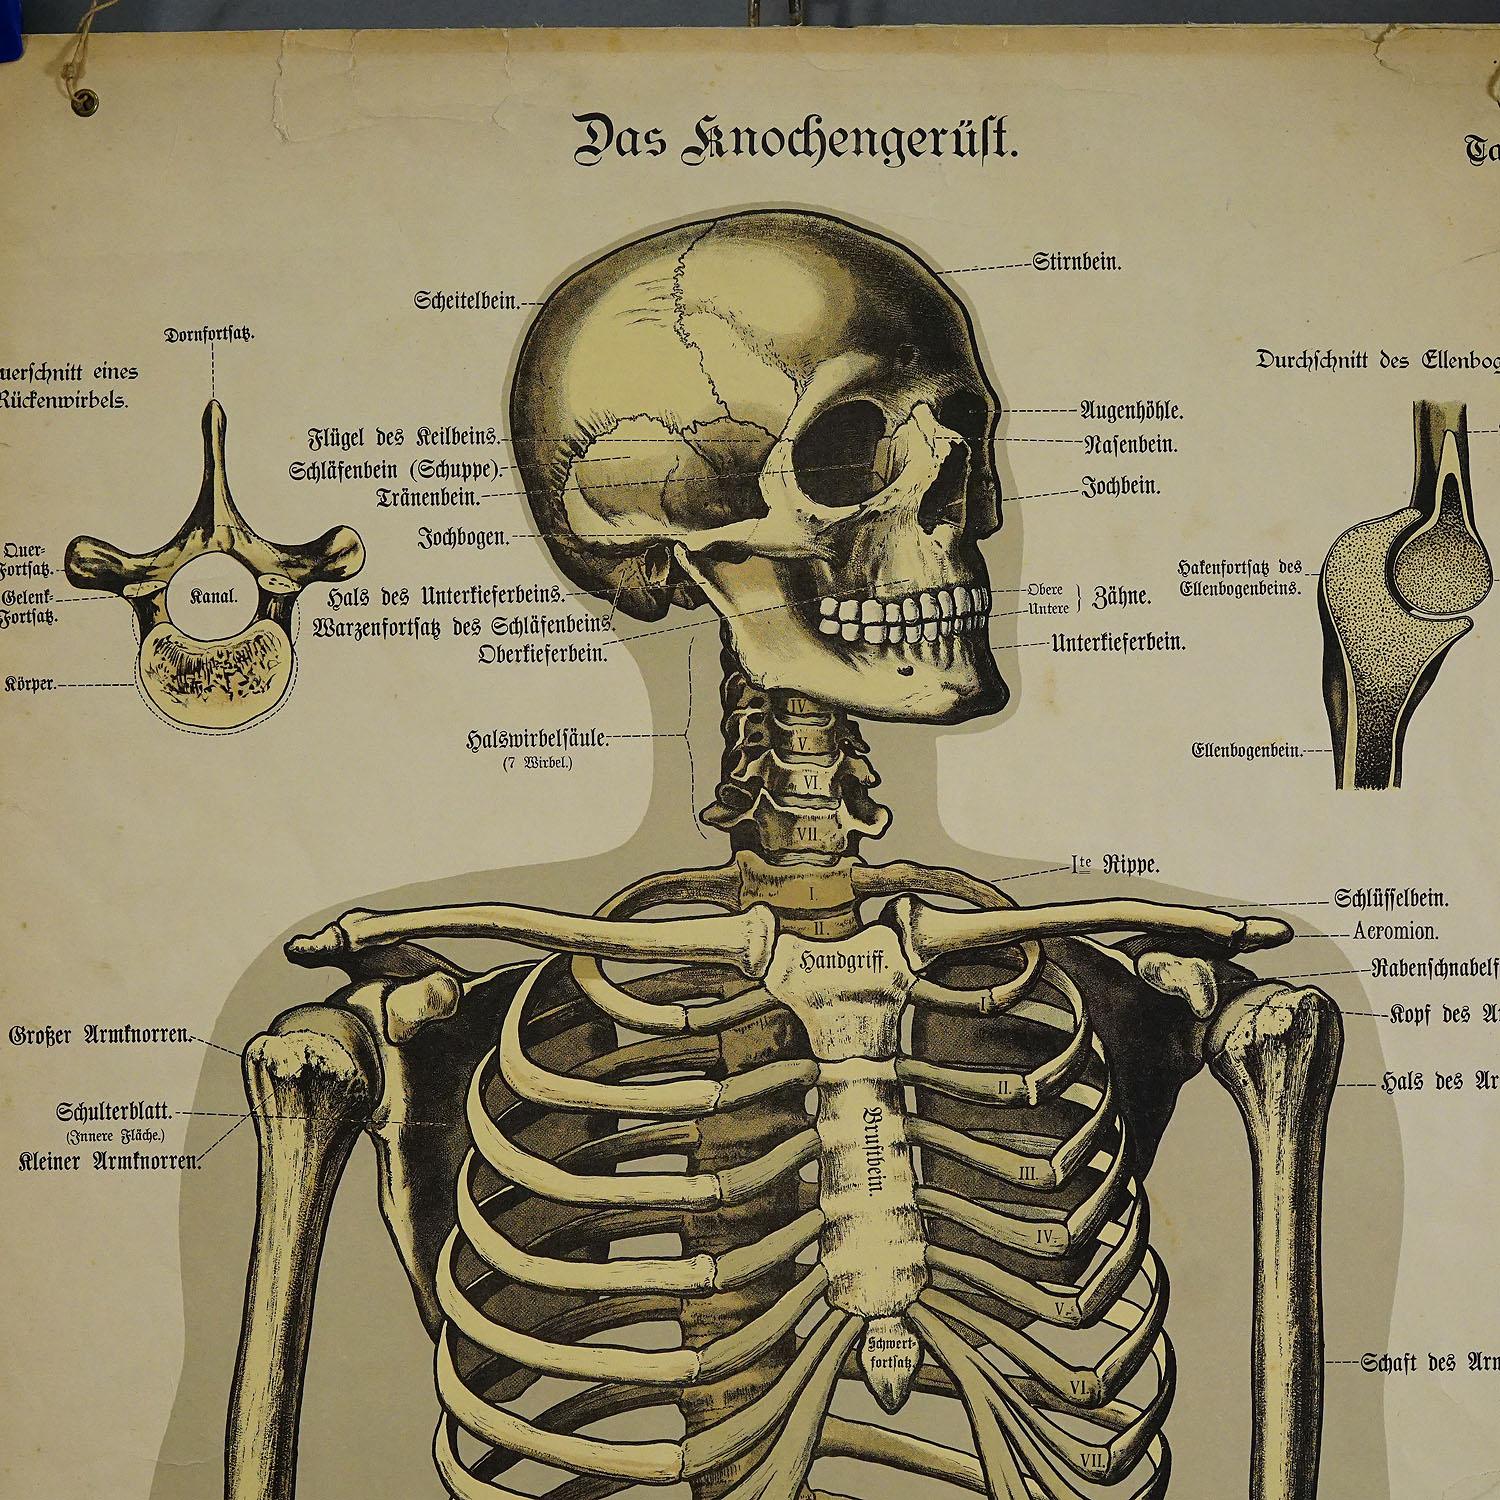 Eine seltene anatomische Wandtafel aus dem 19. Jahrhundert, die das menschliche Skelett darstellt. Auf den Seiten Auf den Seiten befinden sich ausführliche Beschreibungen in deutscher Sprache. Die Wandkarte ist auf Karton gedruckt, herausgegeben von